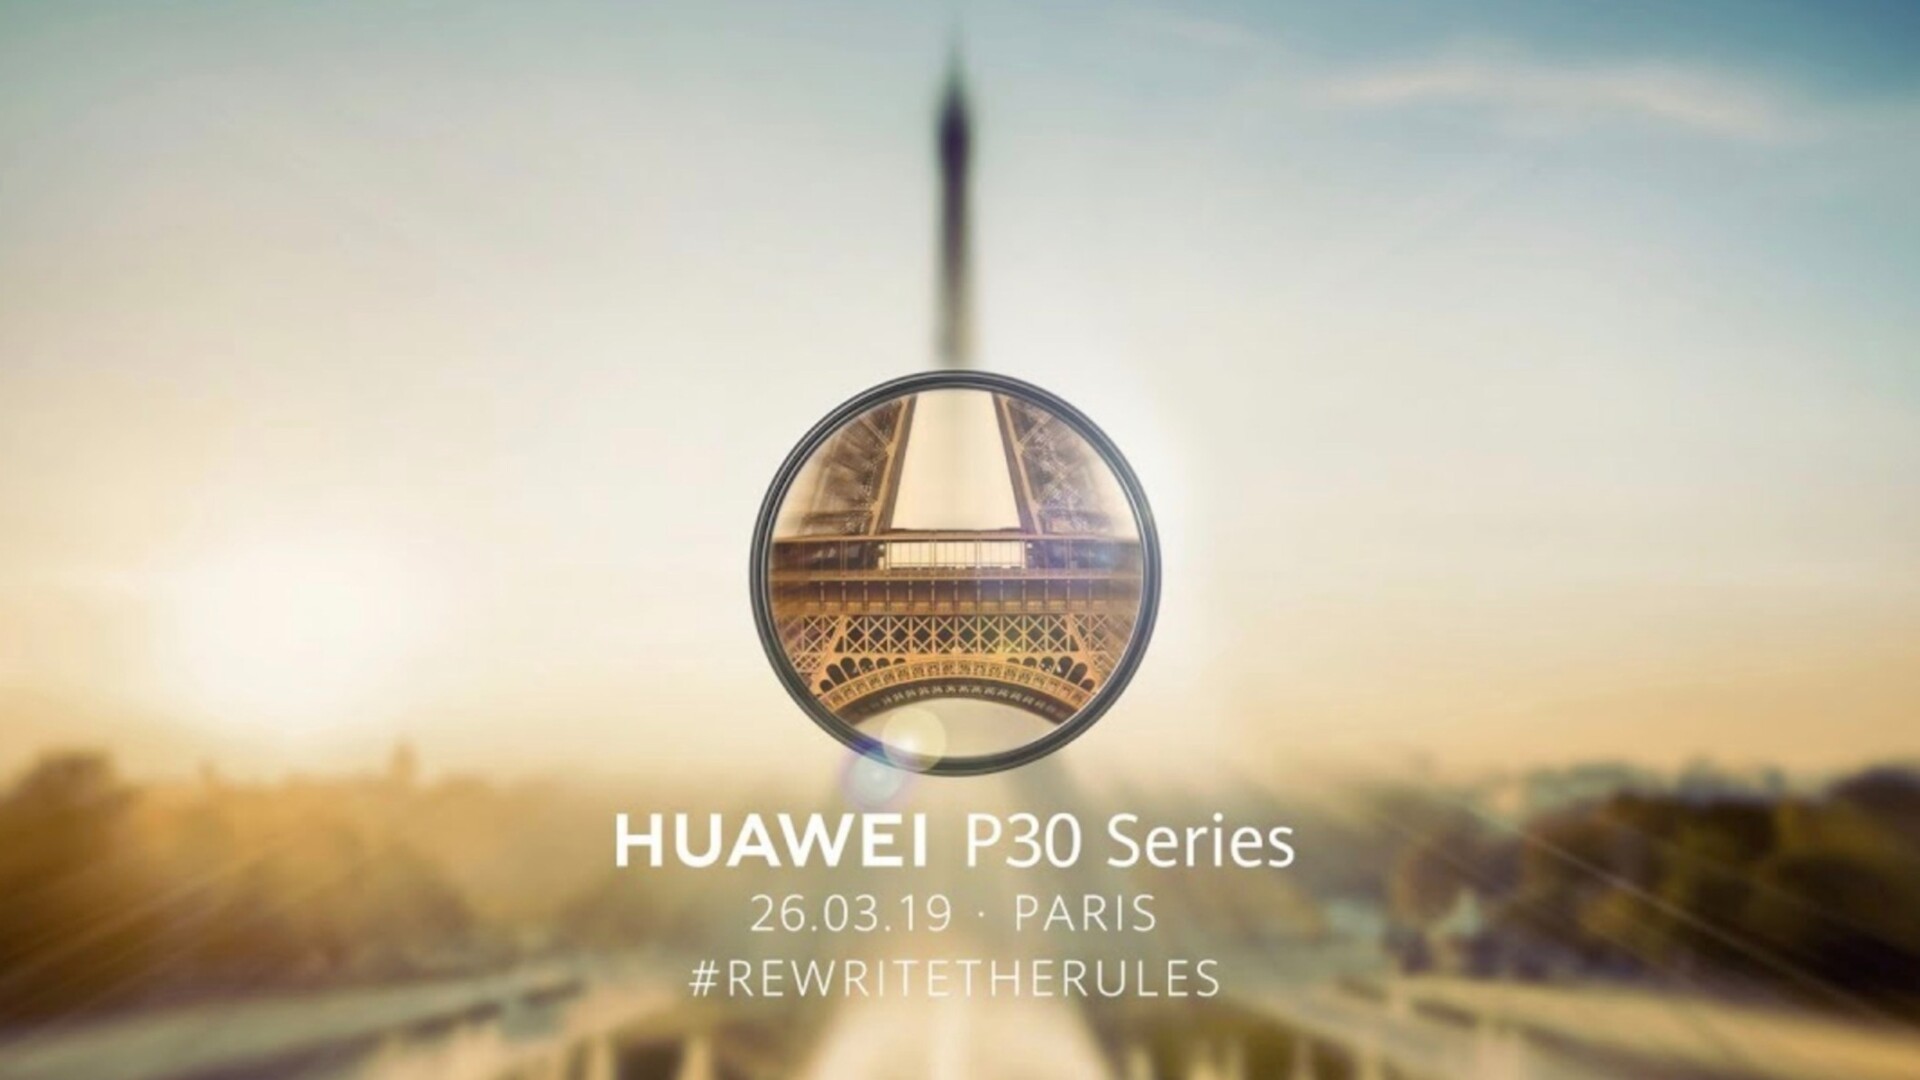 Huawei P30 Pro launch livestream teaser - Huawei P30 launch